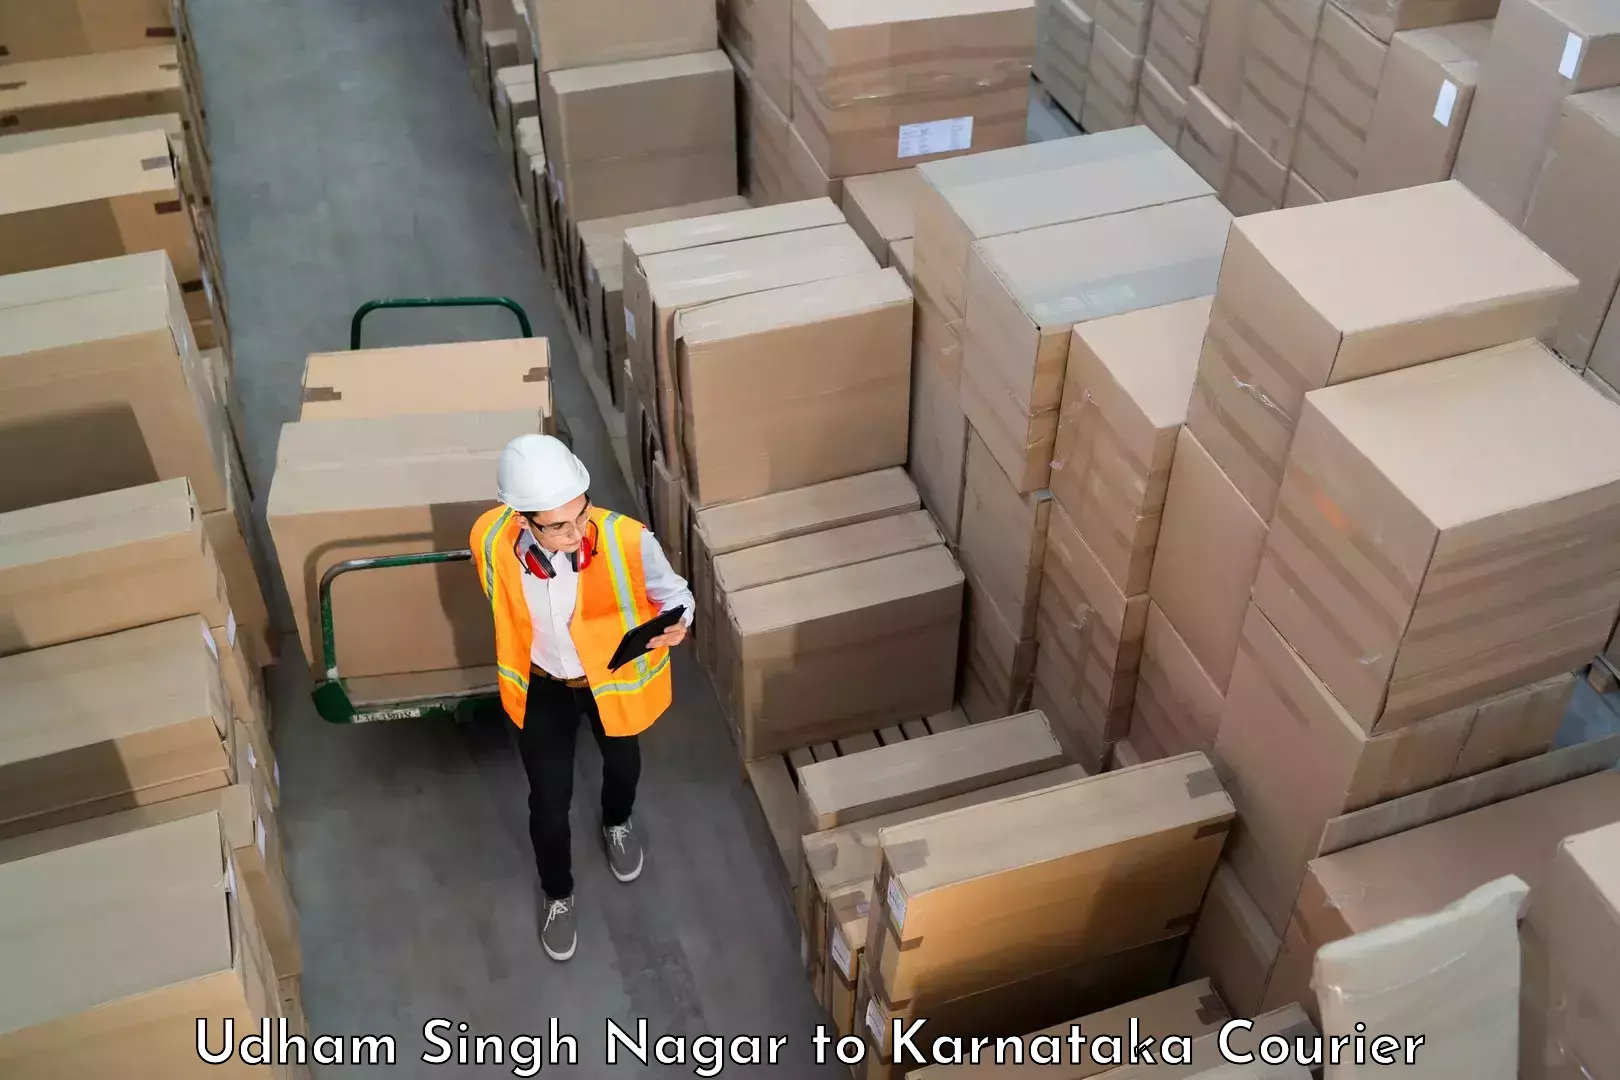 Luggage transport service Udham Singh Nagar to Mangalore